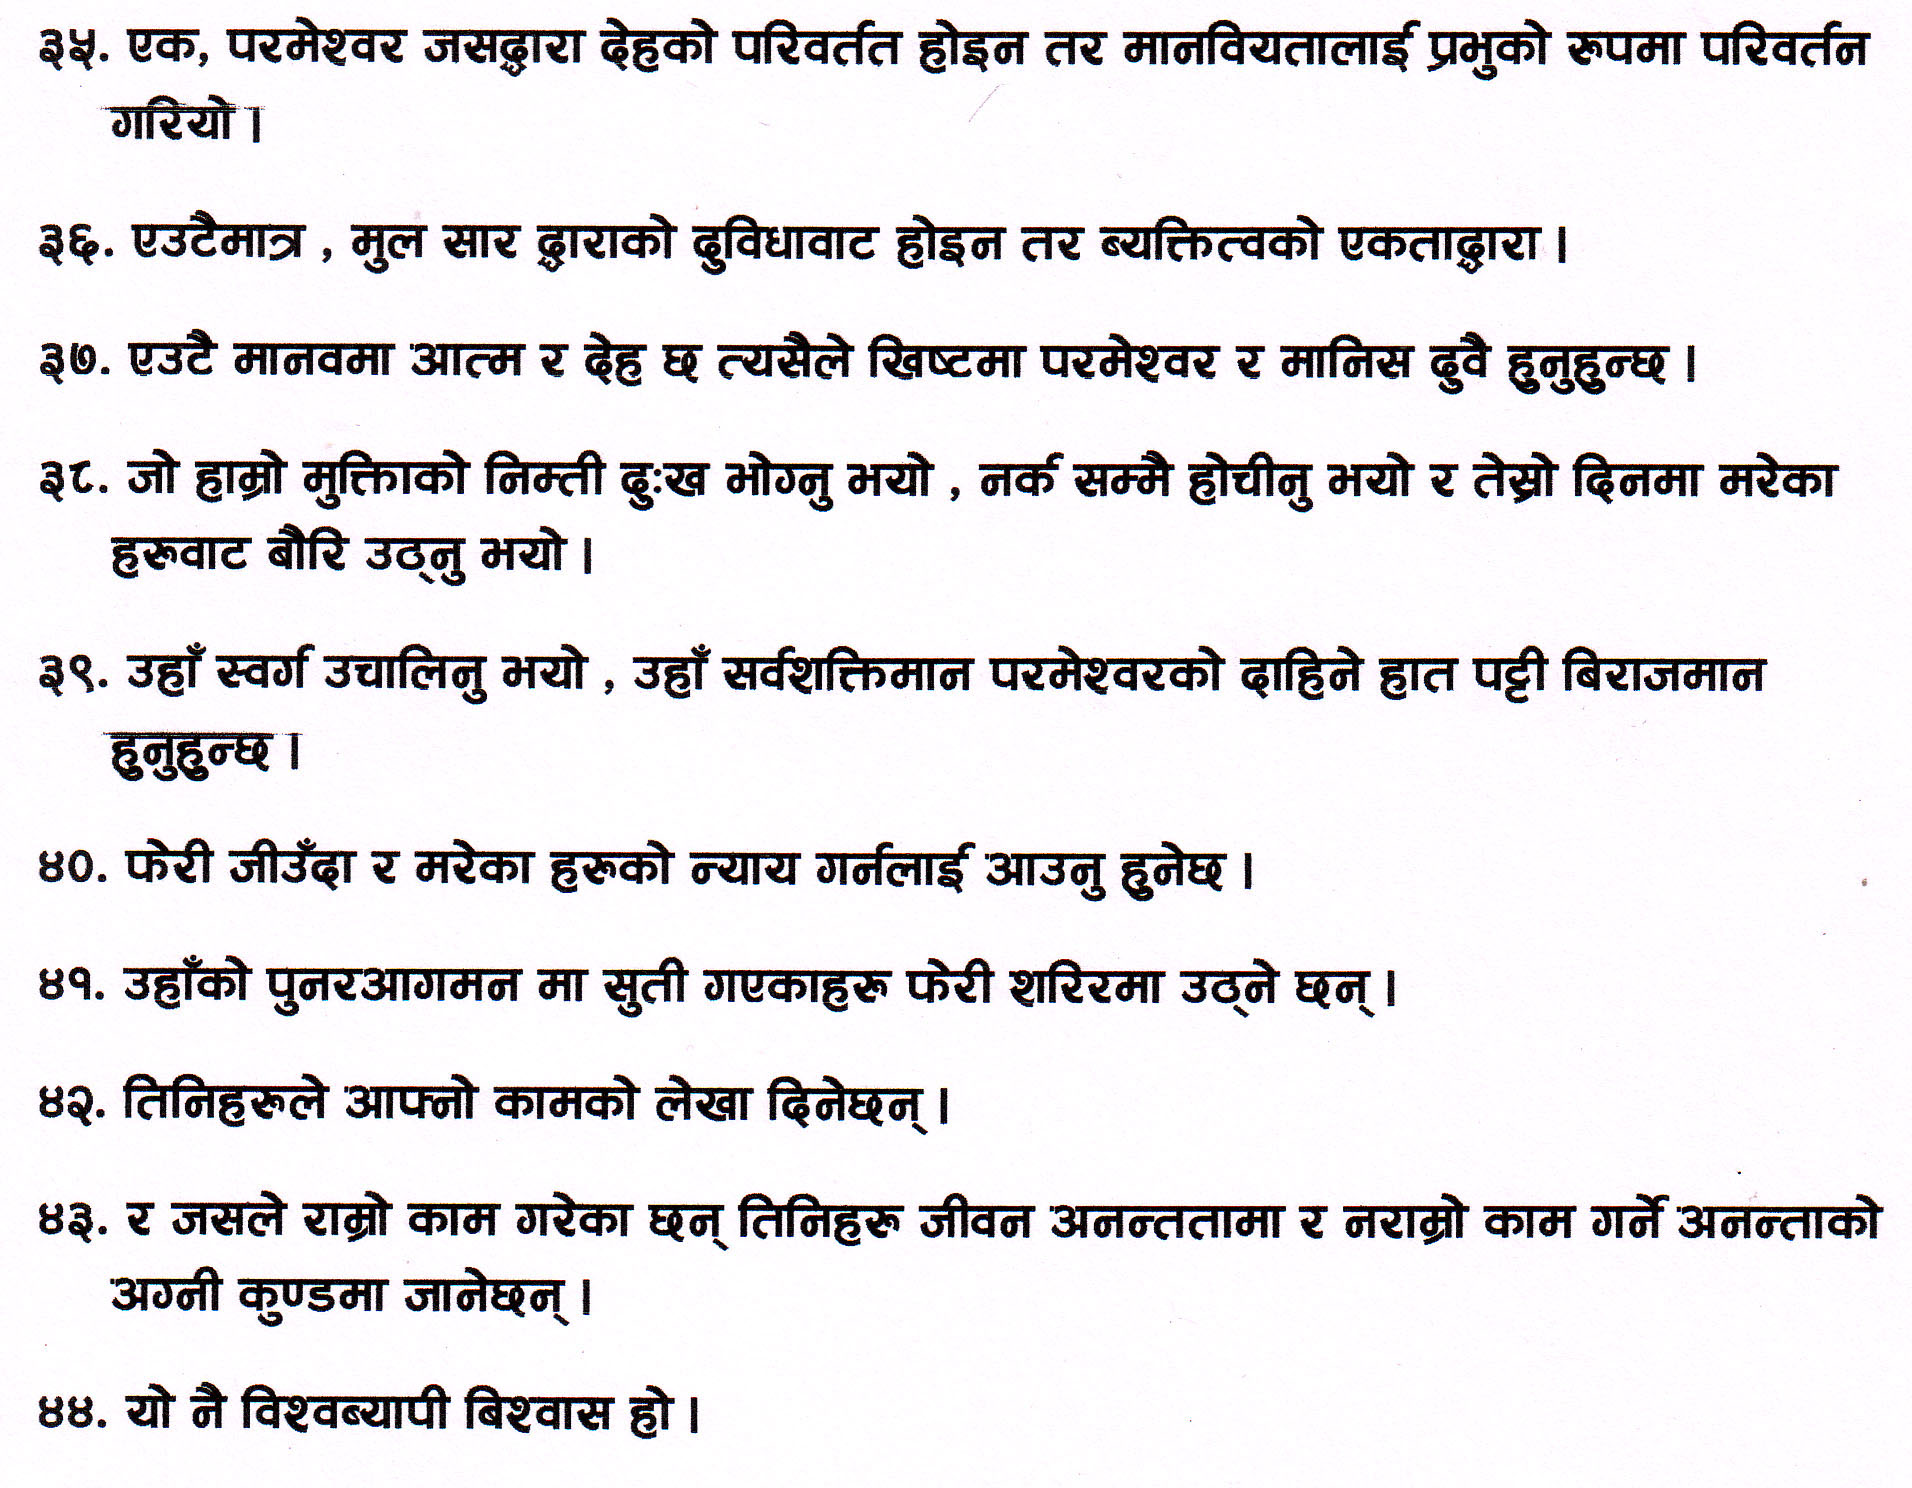 Nepali Athanasian Creed part 3